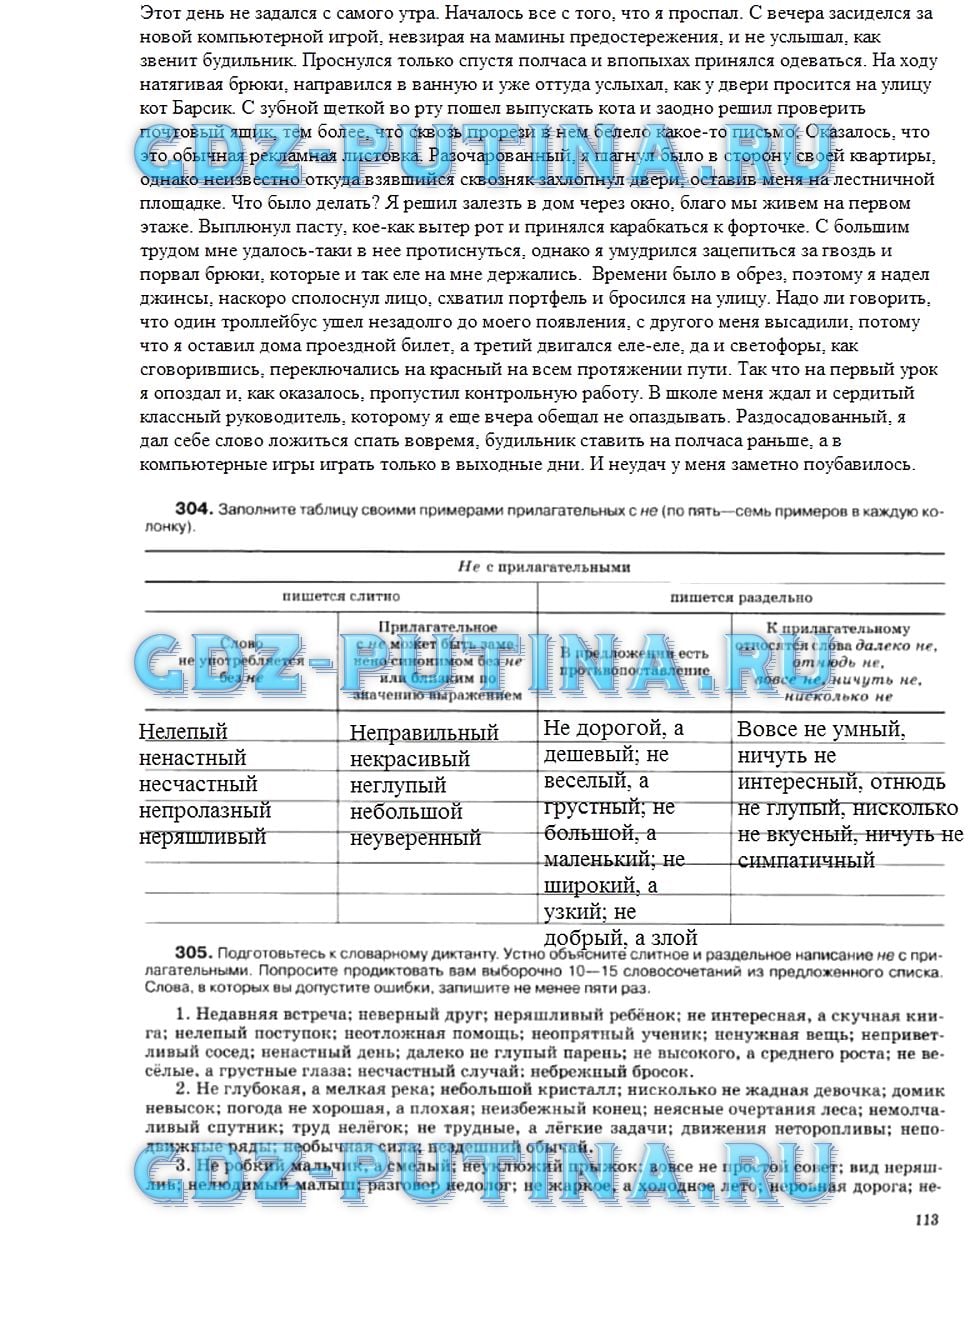 гдз 5 класс рабочая тетрадь страница 113 русский язык Ларионова